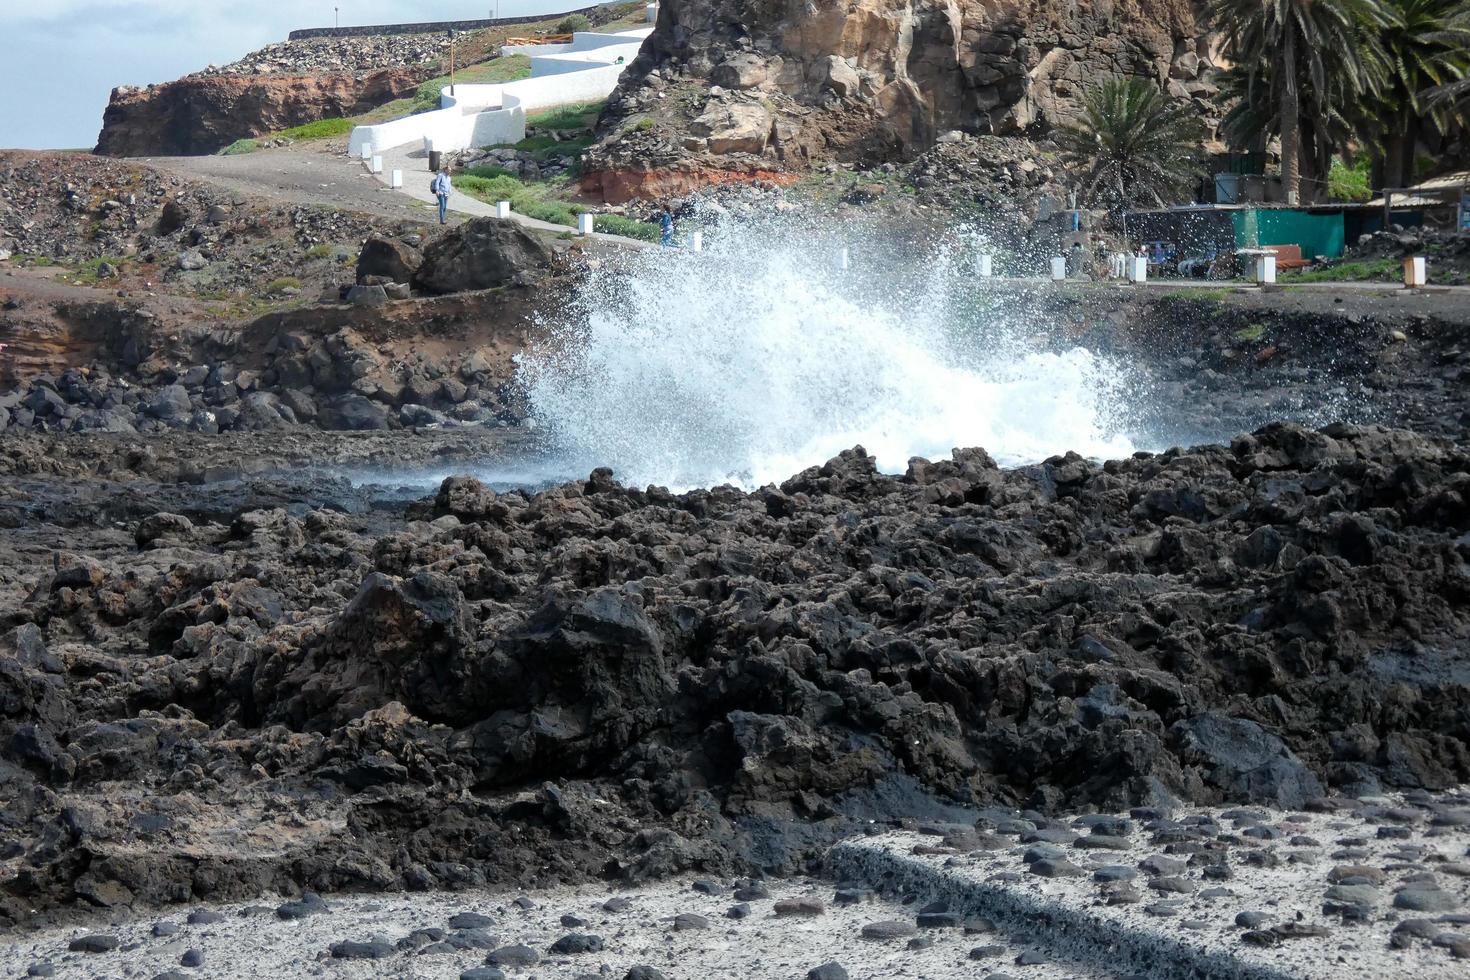 grande onde Crashing contro il rocce nel il oceano foto